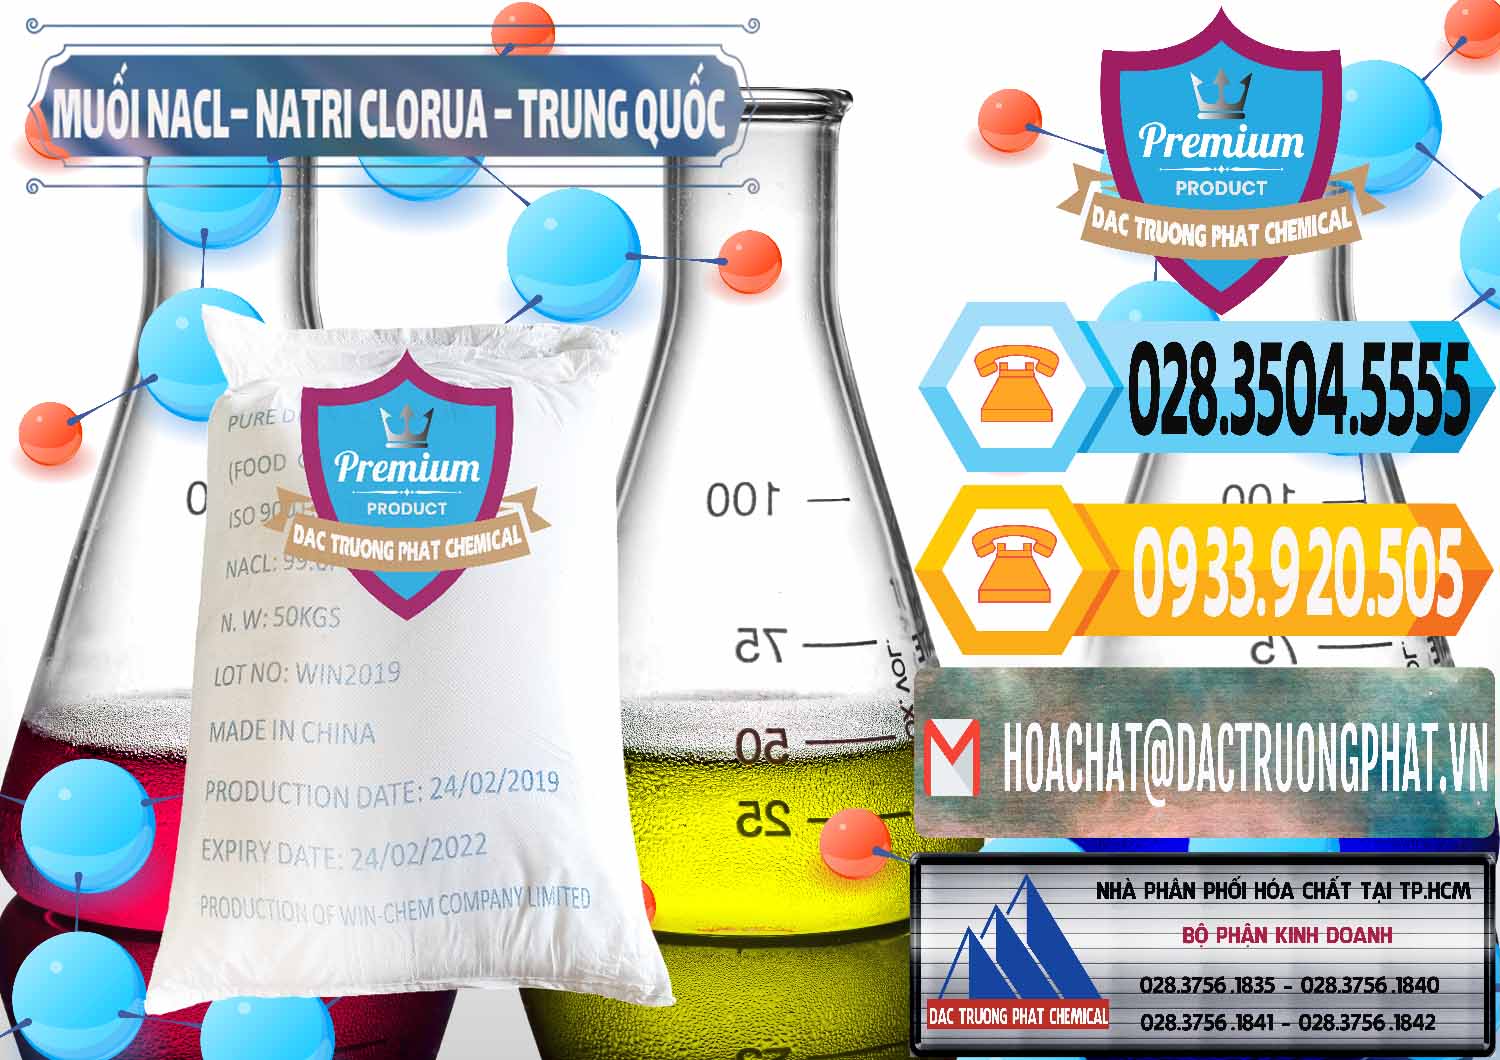 Cung cấp - bán Muối NaCL – Sodium Chloride Trung Quốc China - 0097 - Chuyên cung cấp và bán hóa chất tại TP.HCM - hoachattayrua.net